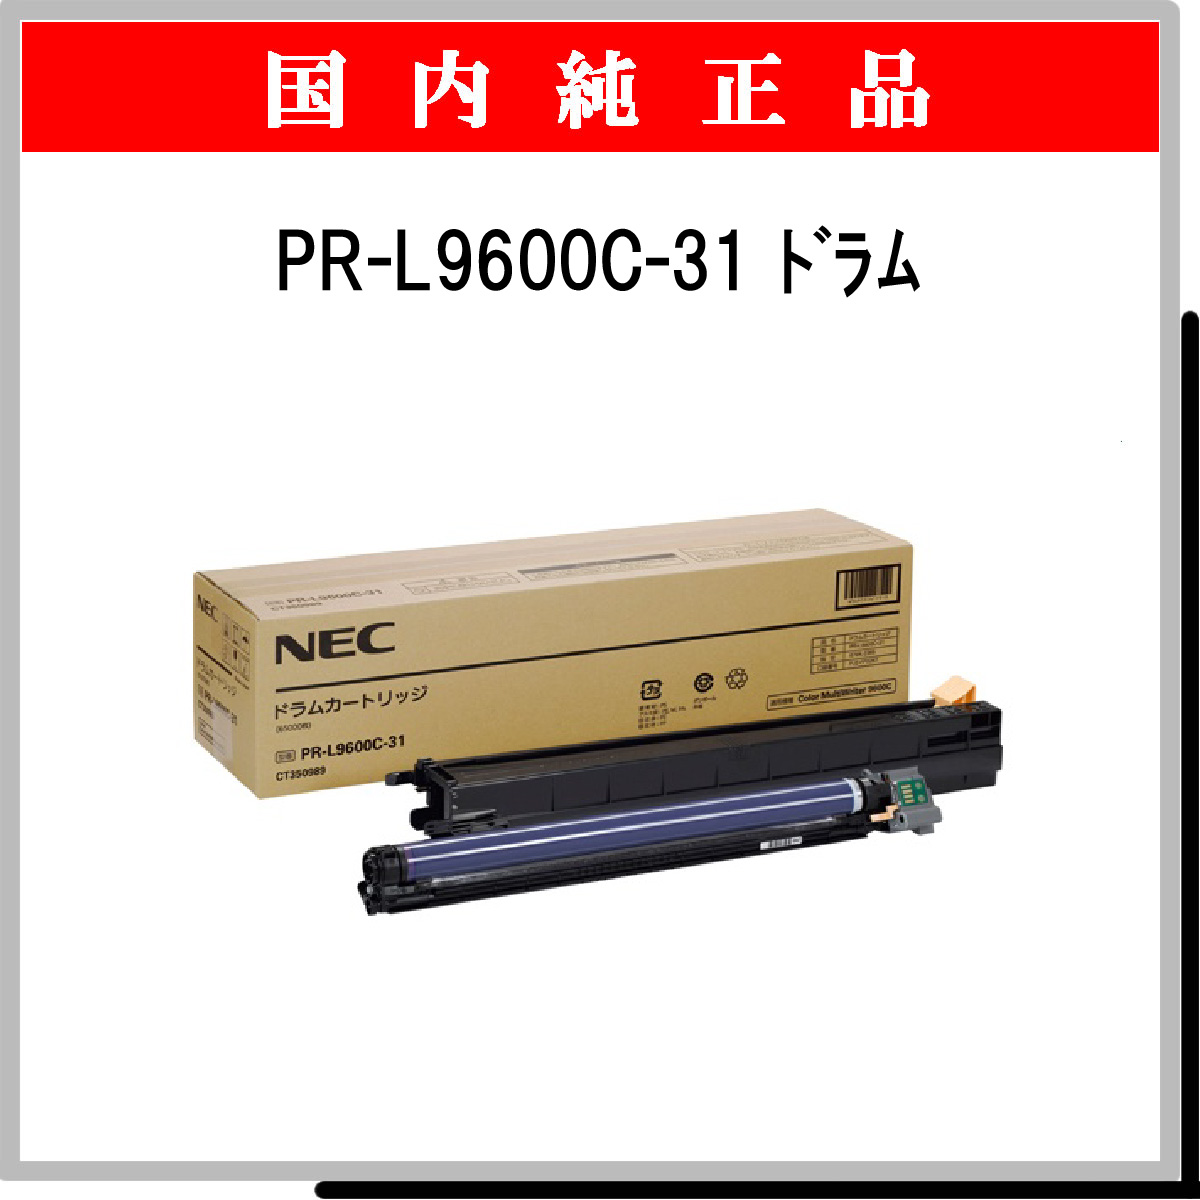 ランキング総合1位 NEC ドラムカートリッジ PR-L9950C-31 1個